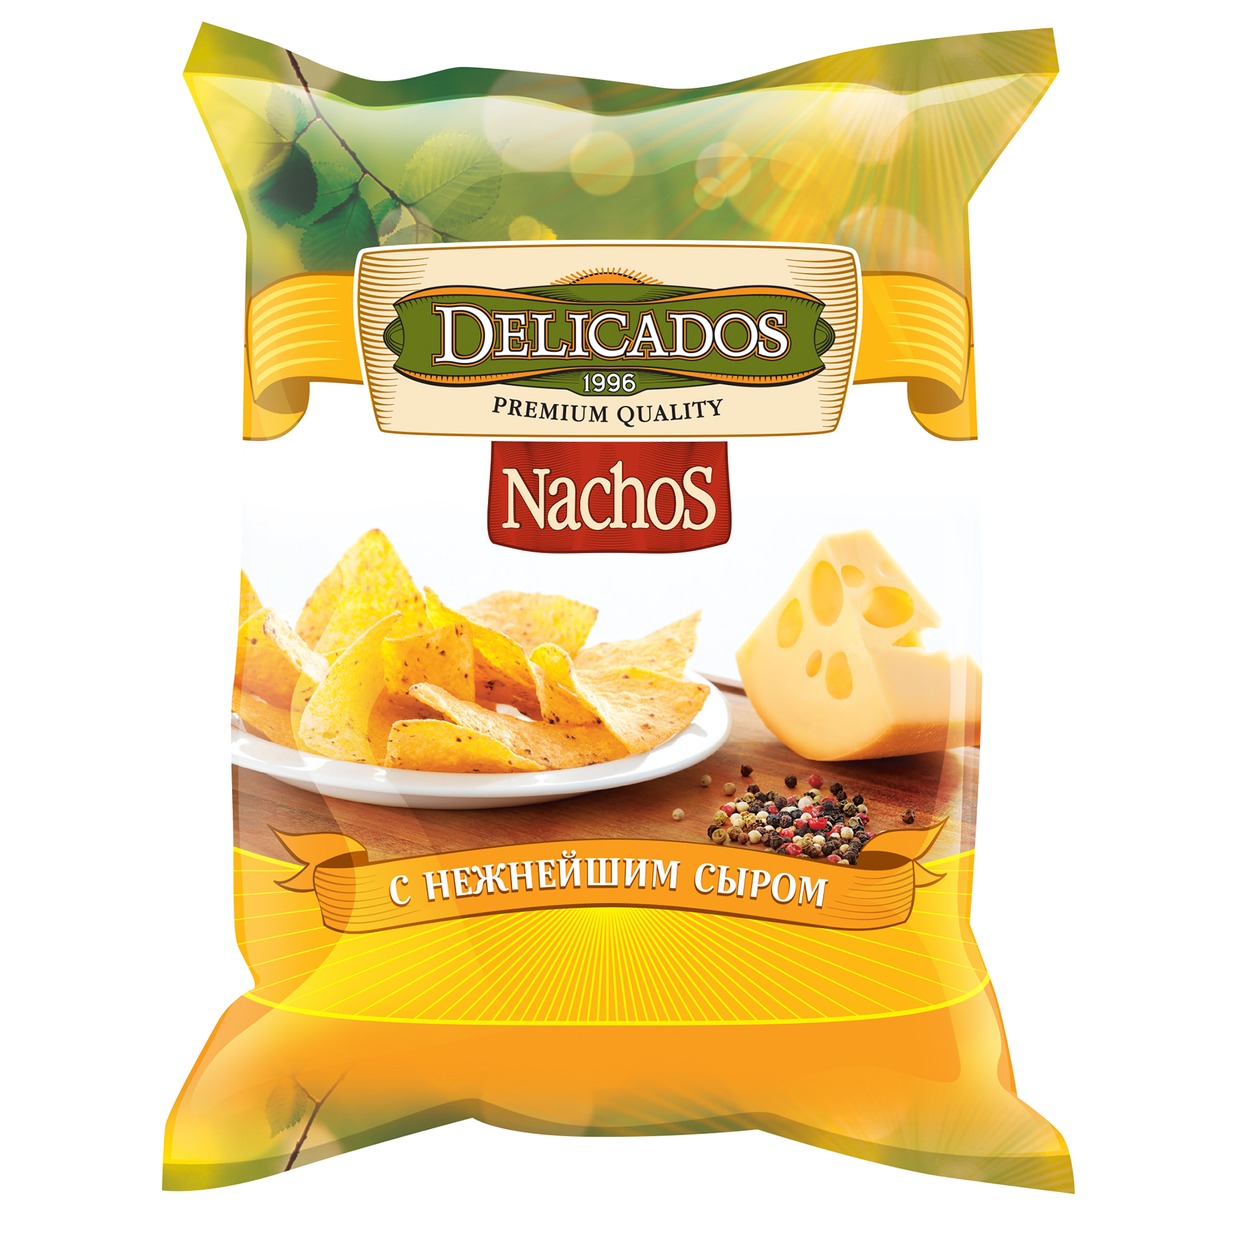 Начос Delicados с нежнейшим сыром 150г по акции в Пятерочке